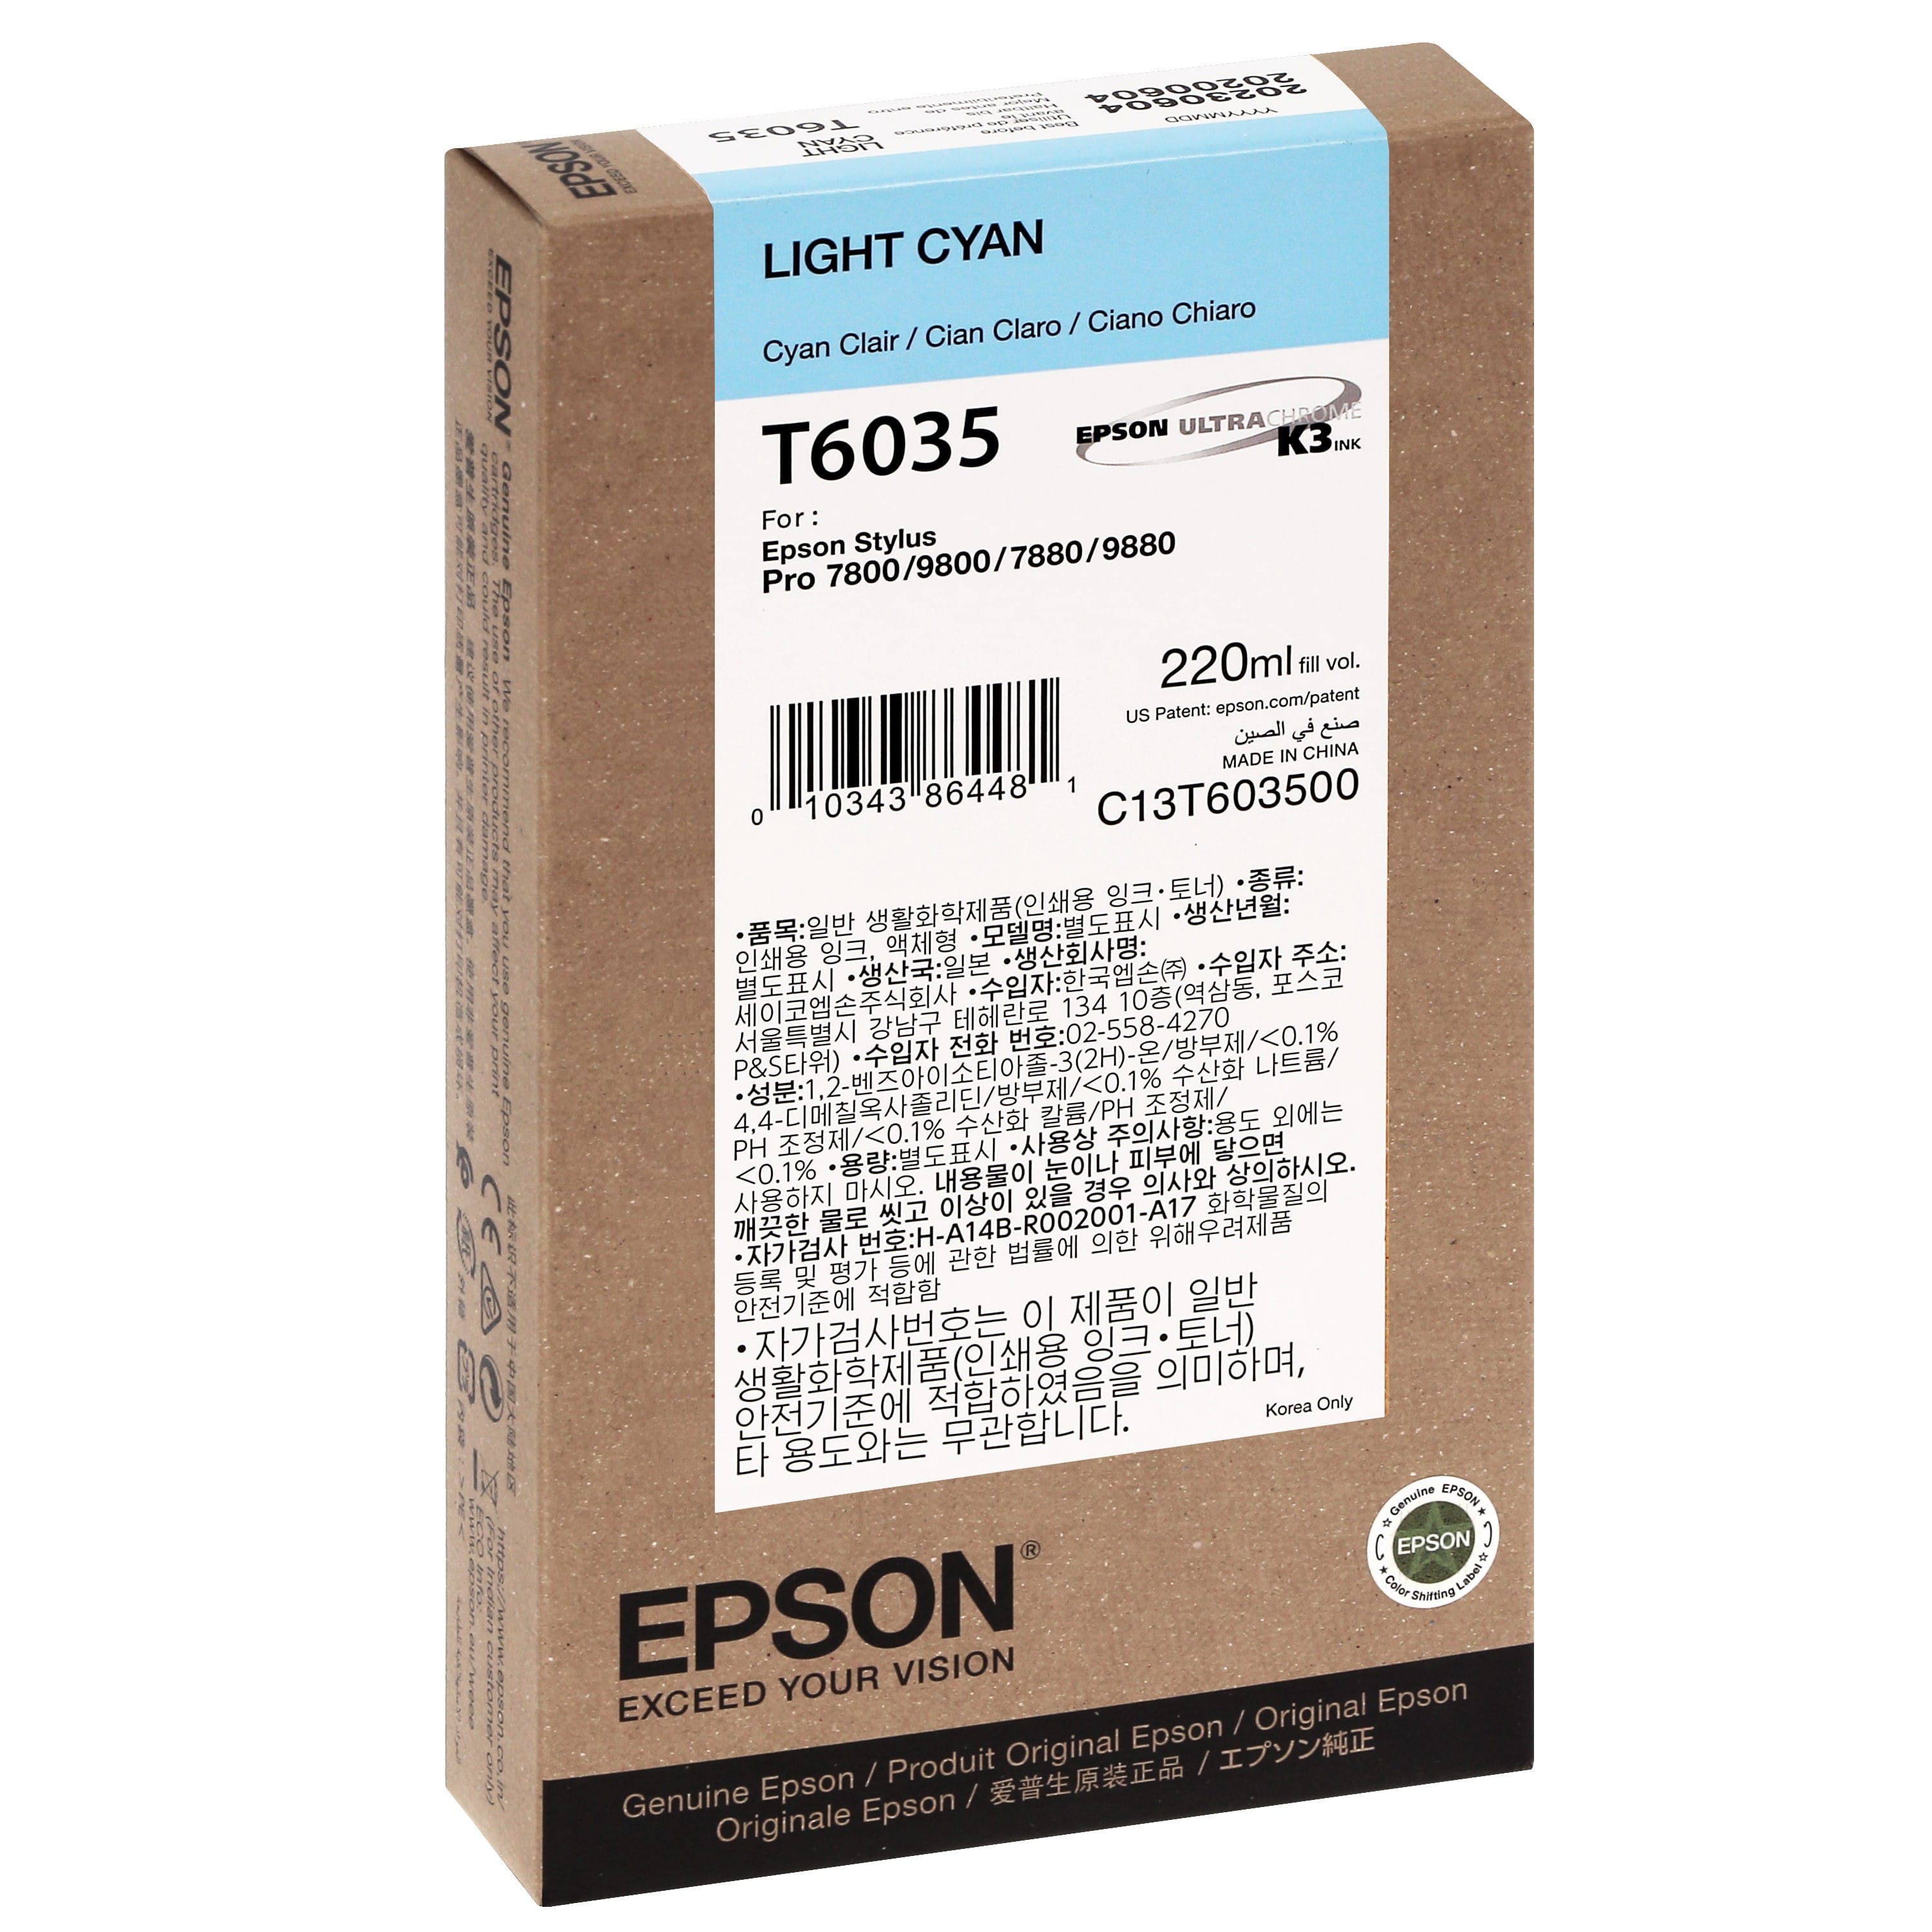 EPSON - Cartouche d'encre traceur T6035 Pour imprimante 7800/7880/9800/9880 Cyan clair - 220ml